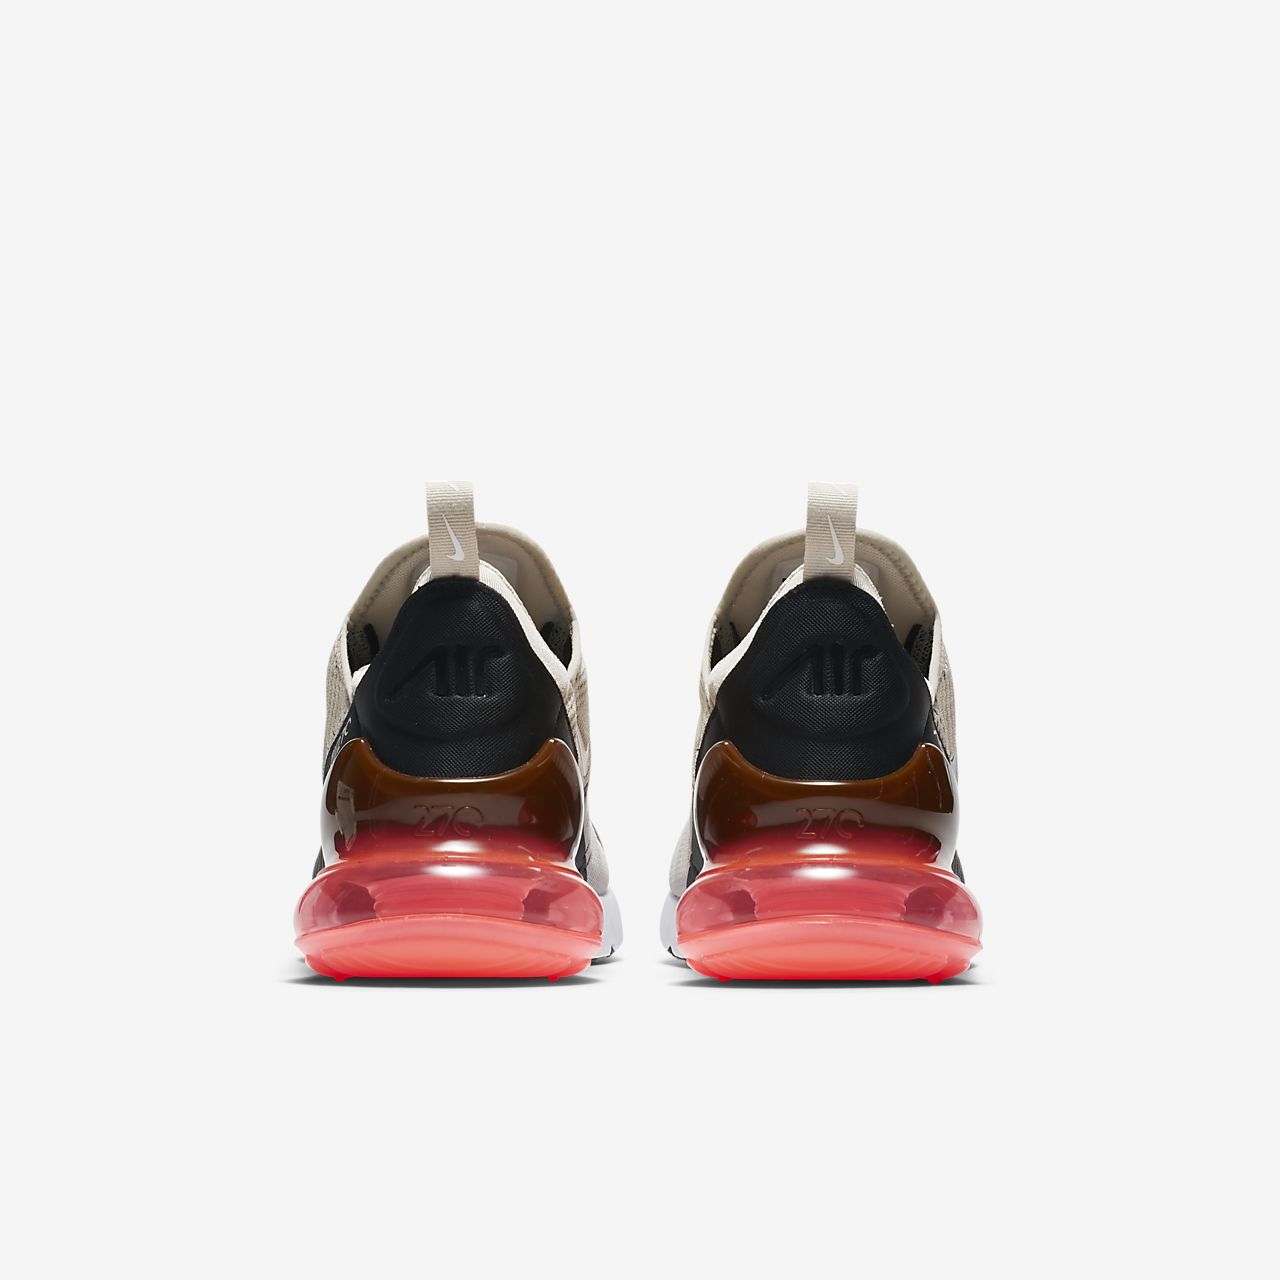 Nike Air Max 270 - Sneakers - Sort/Hvide | DK-66078